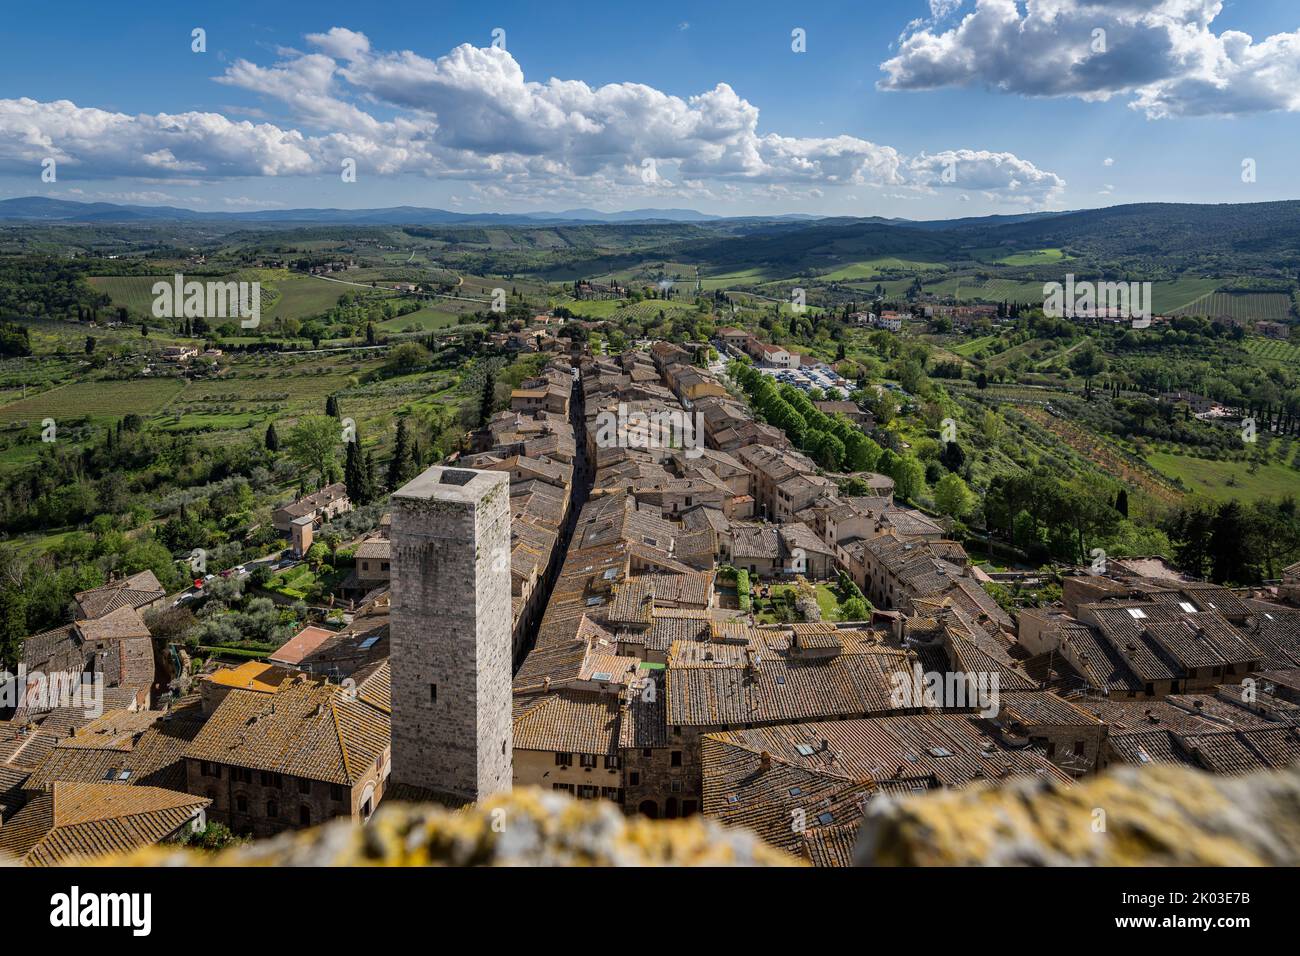 City view, above the rooftops of San Gimignano, Siena, Tuscany, Italy Stock Photo